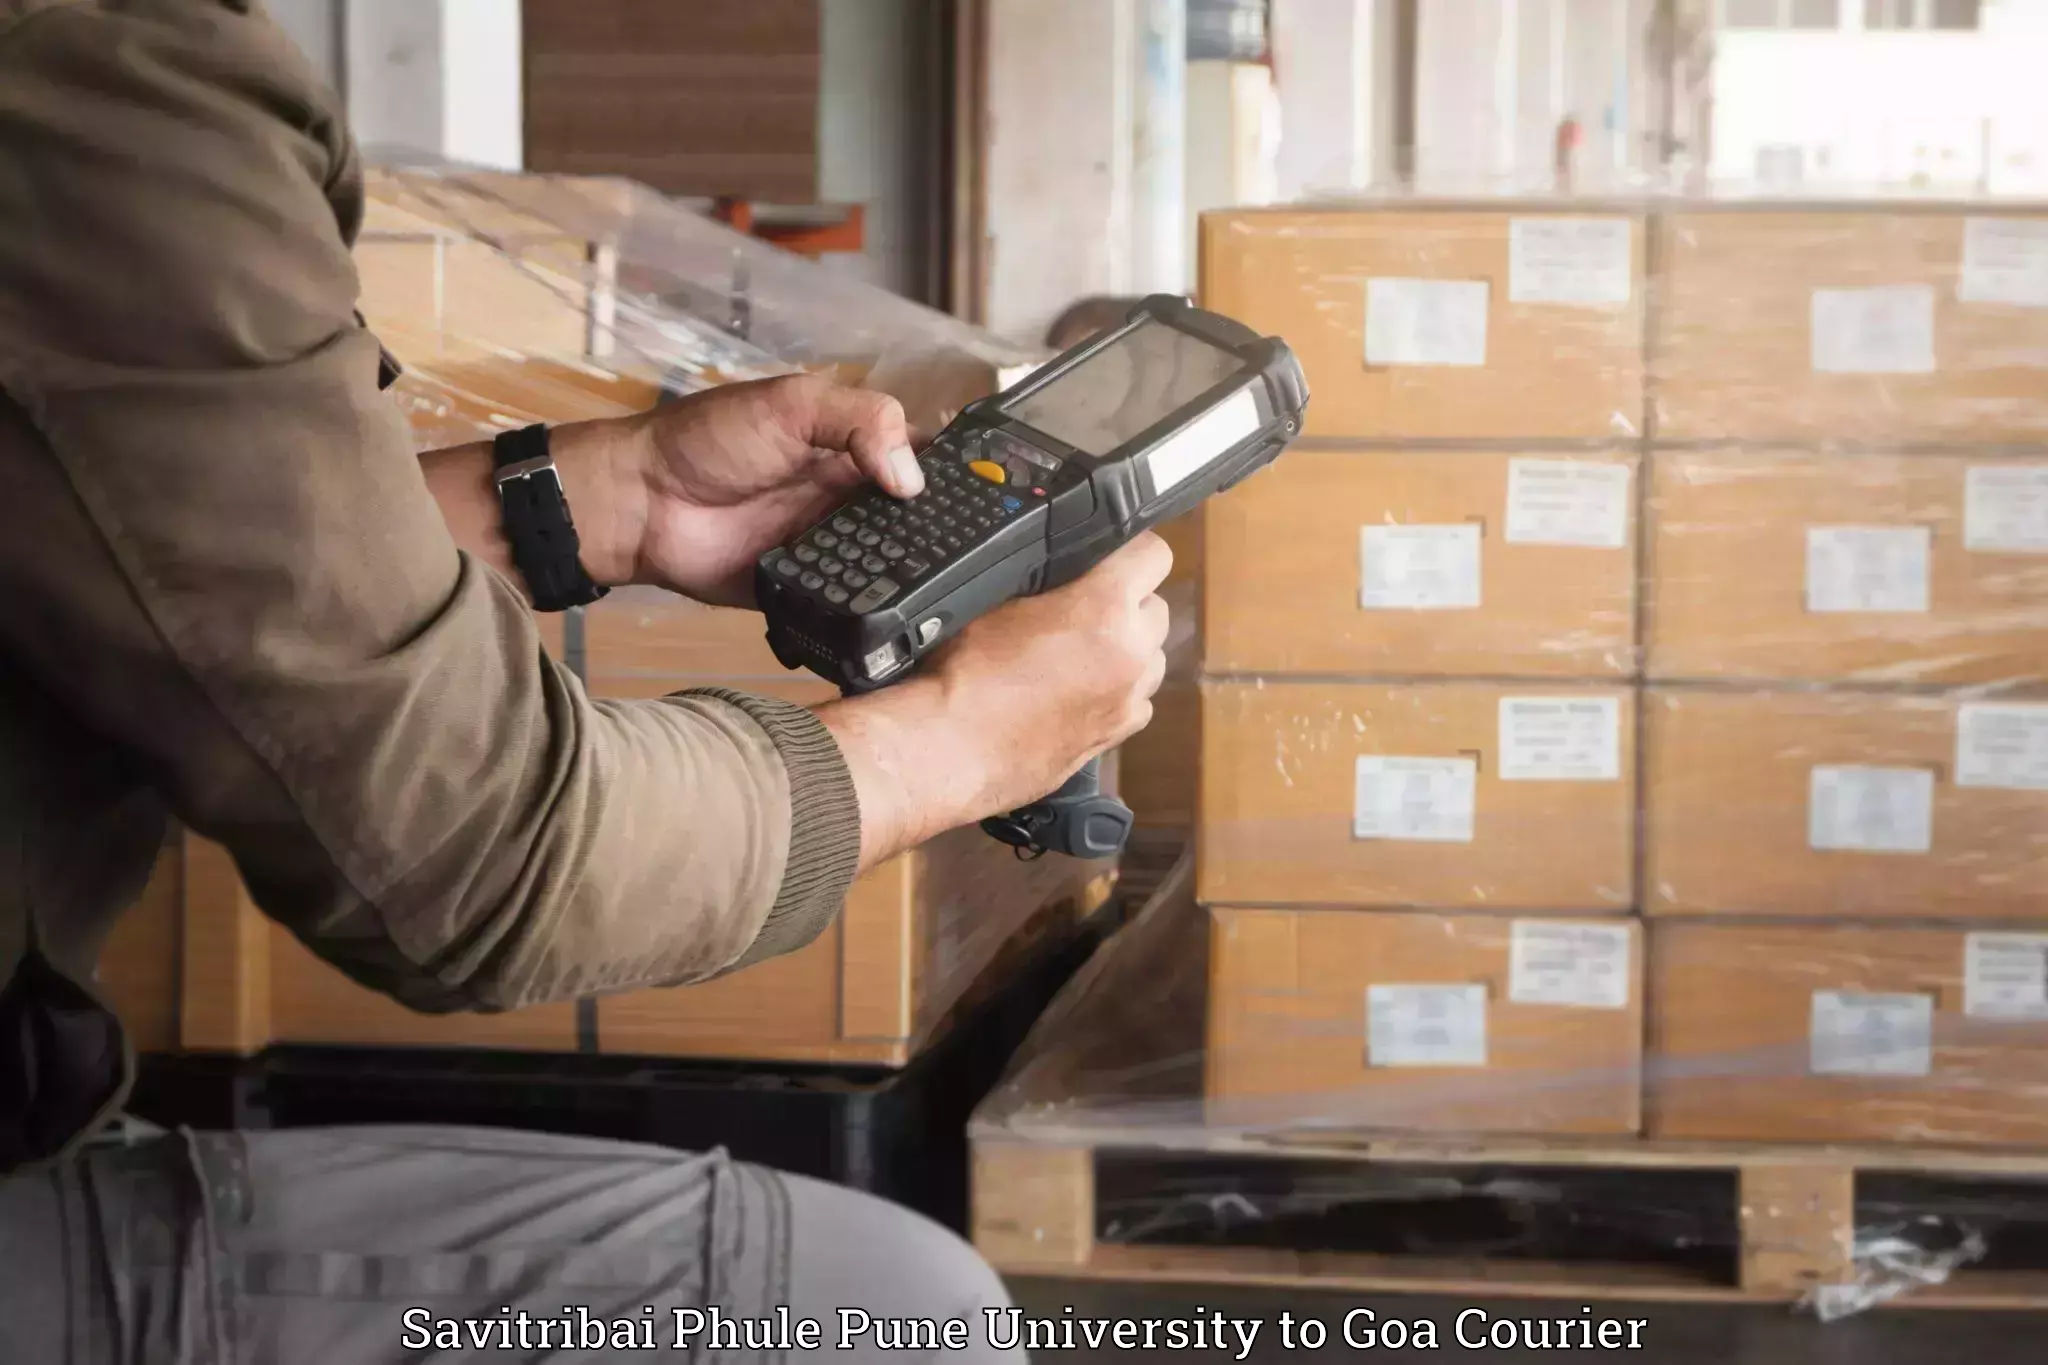 Luggage storage and delivery Savitribai Phule Pune University to IIT Goa